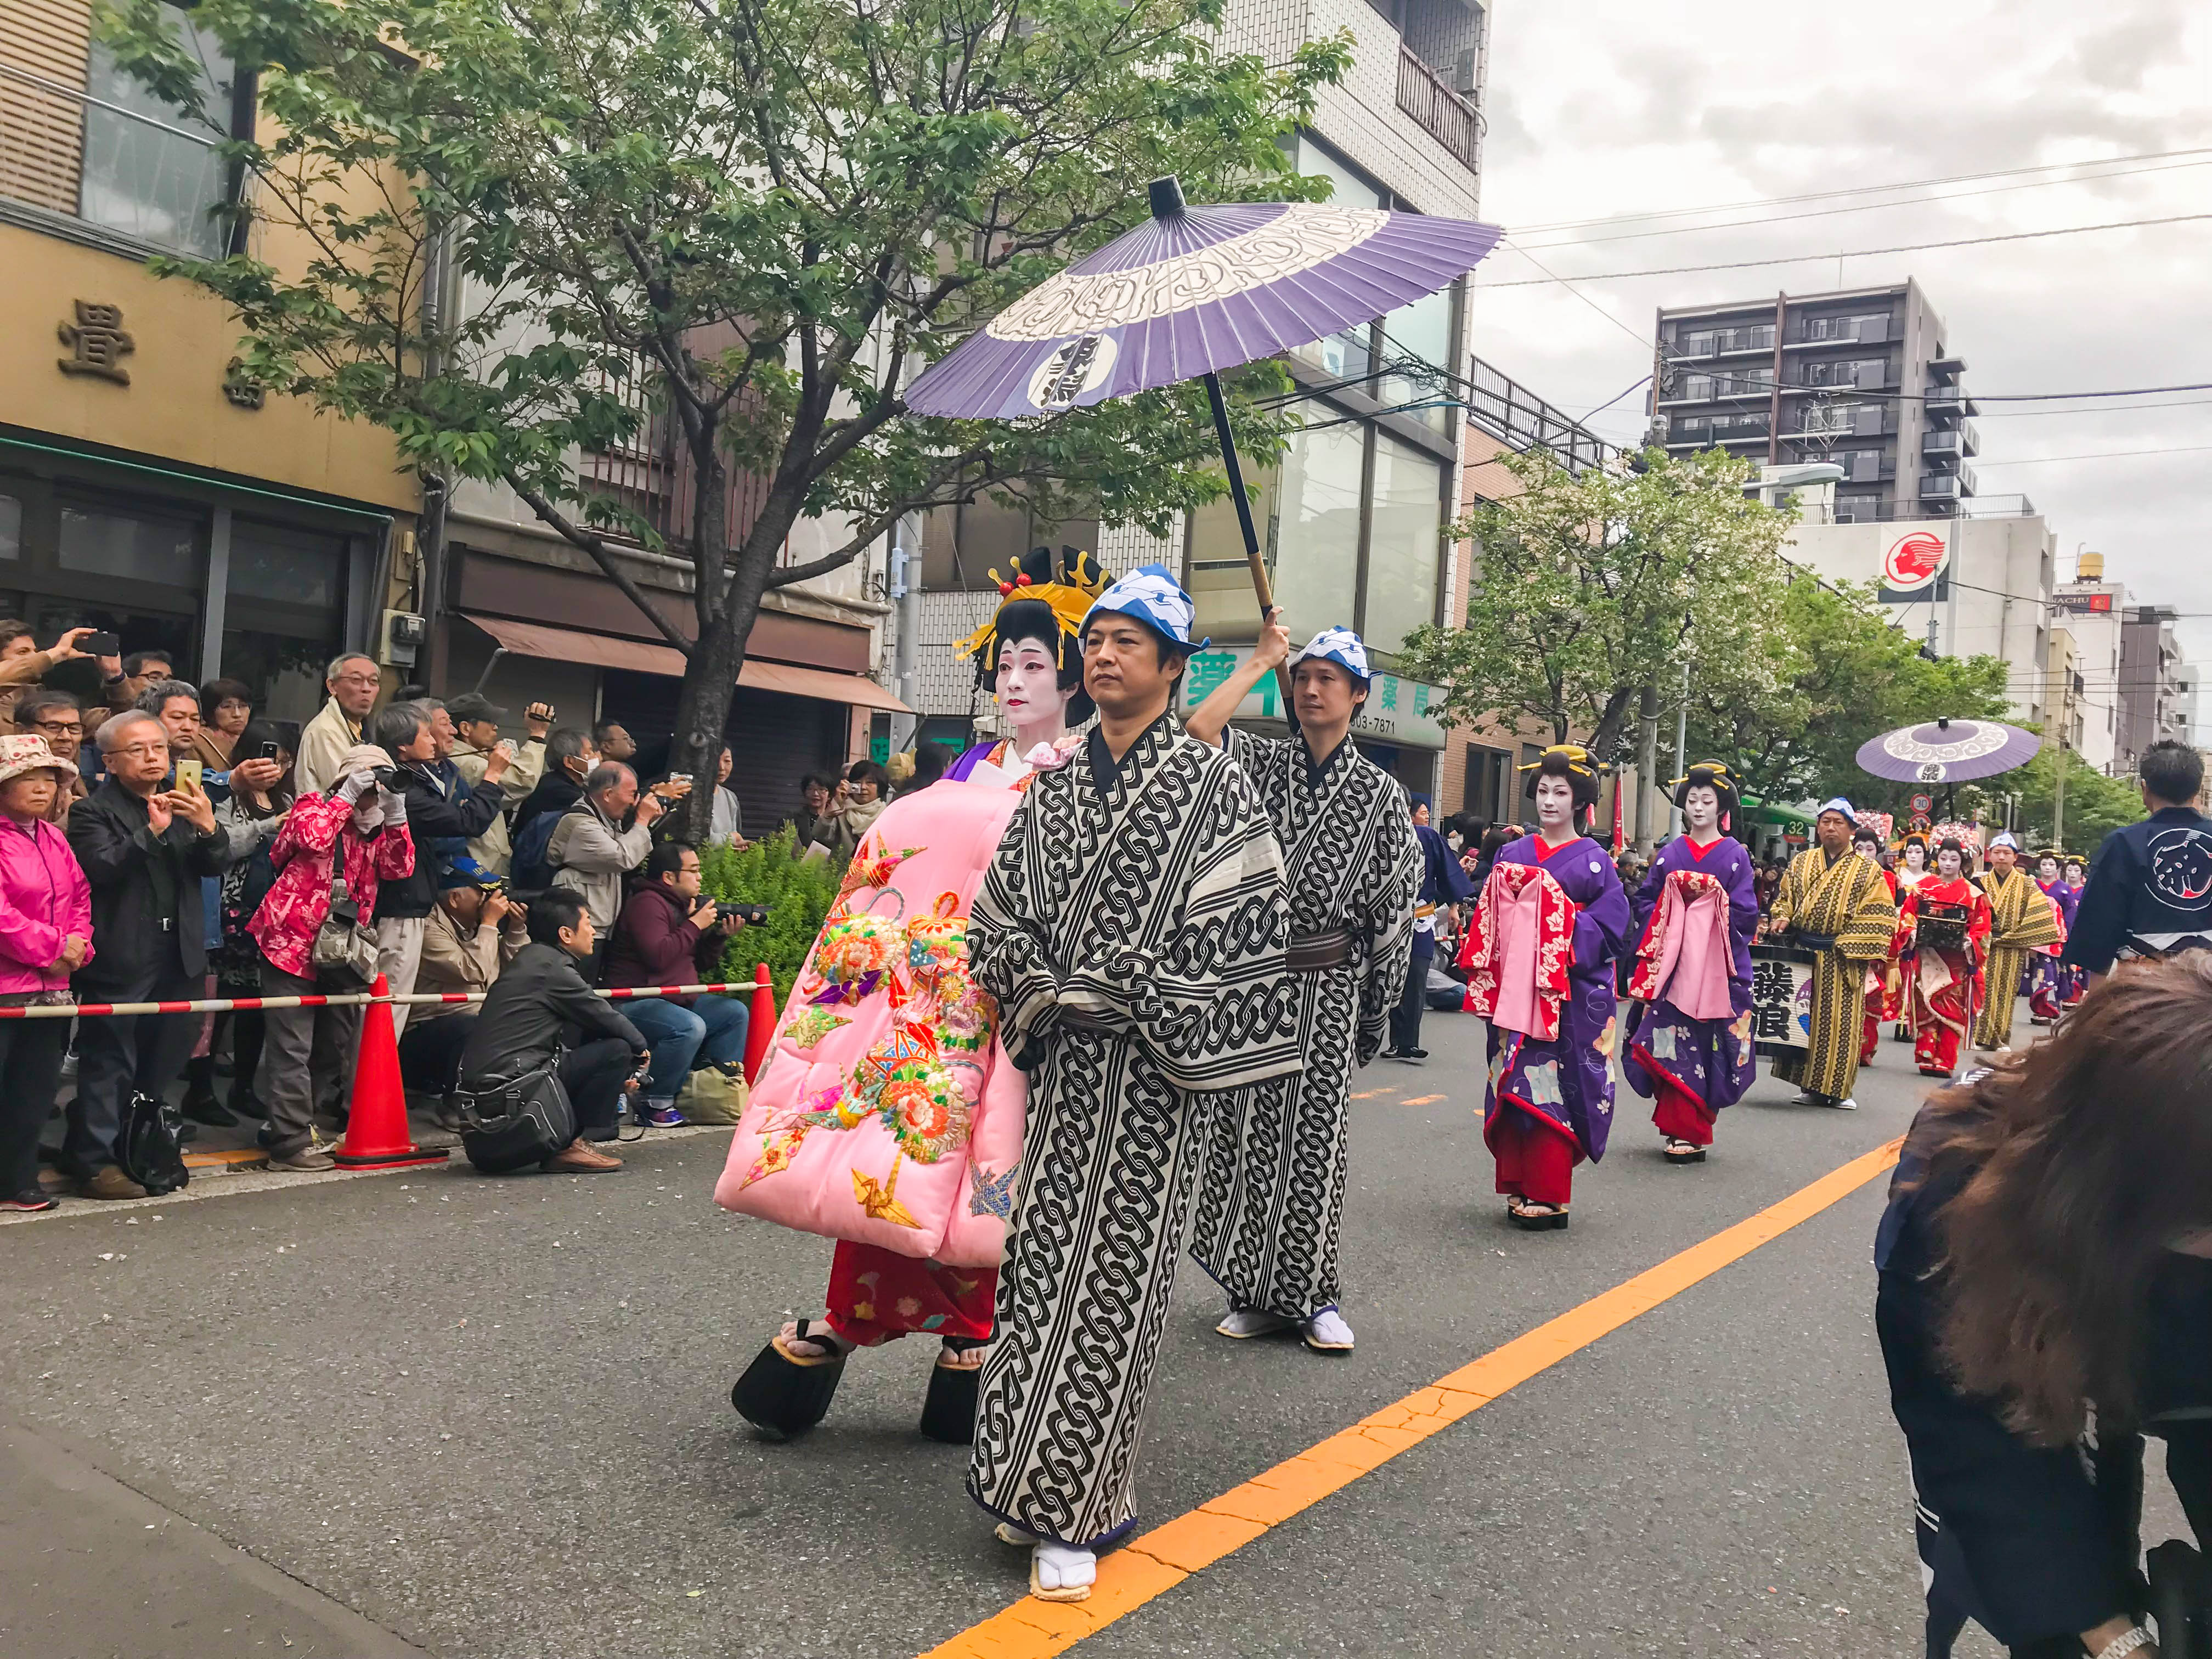 藝妓 與 花魁 傻傻分不清楚 一起來探究影響日本深遠的傳統文化吧